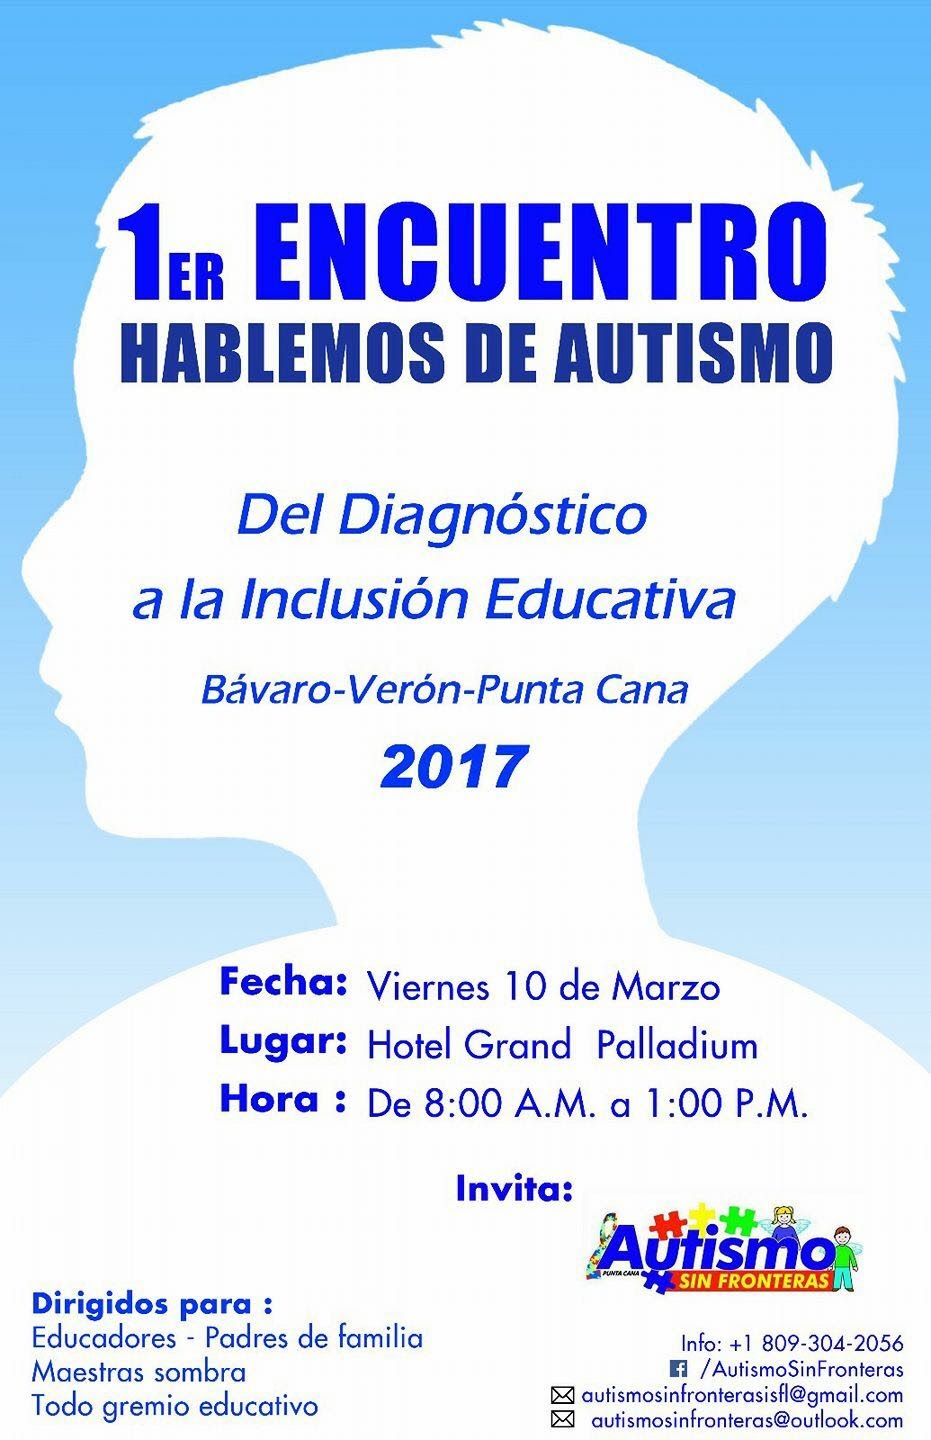 1er Encuentro “Hablemos de Autismo” del Diagnostico a la Inclusión Educativa 2017